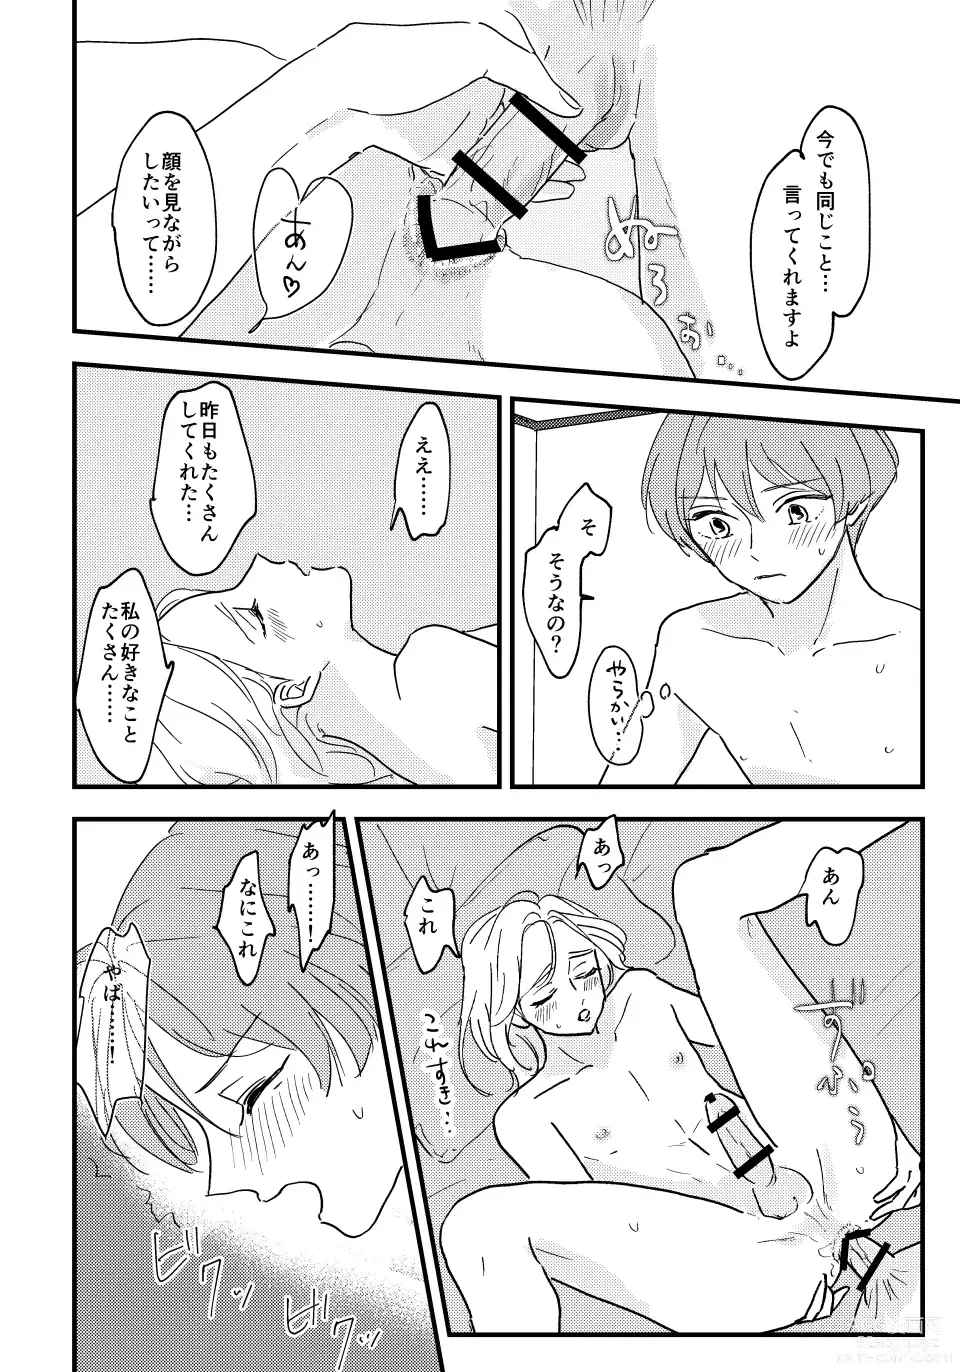 Page 33 of doujinshi Otona ni Nattara